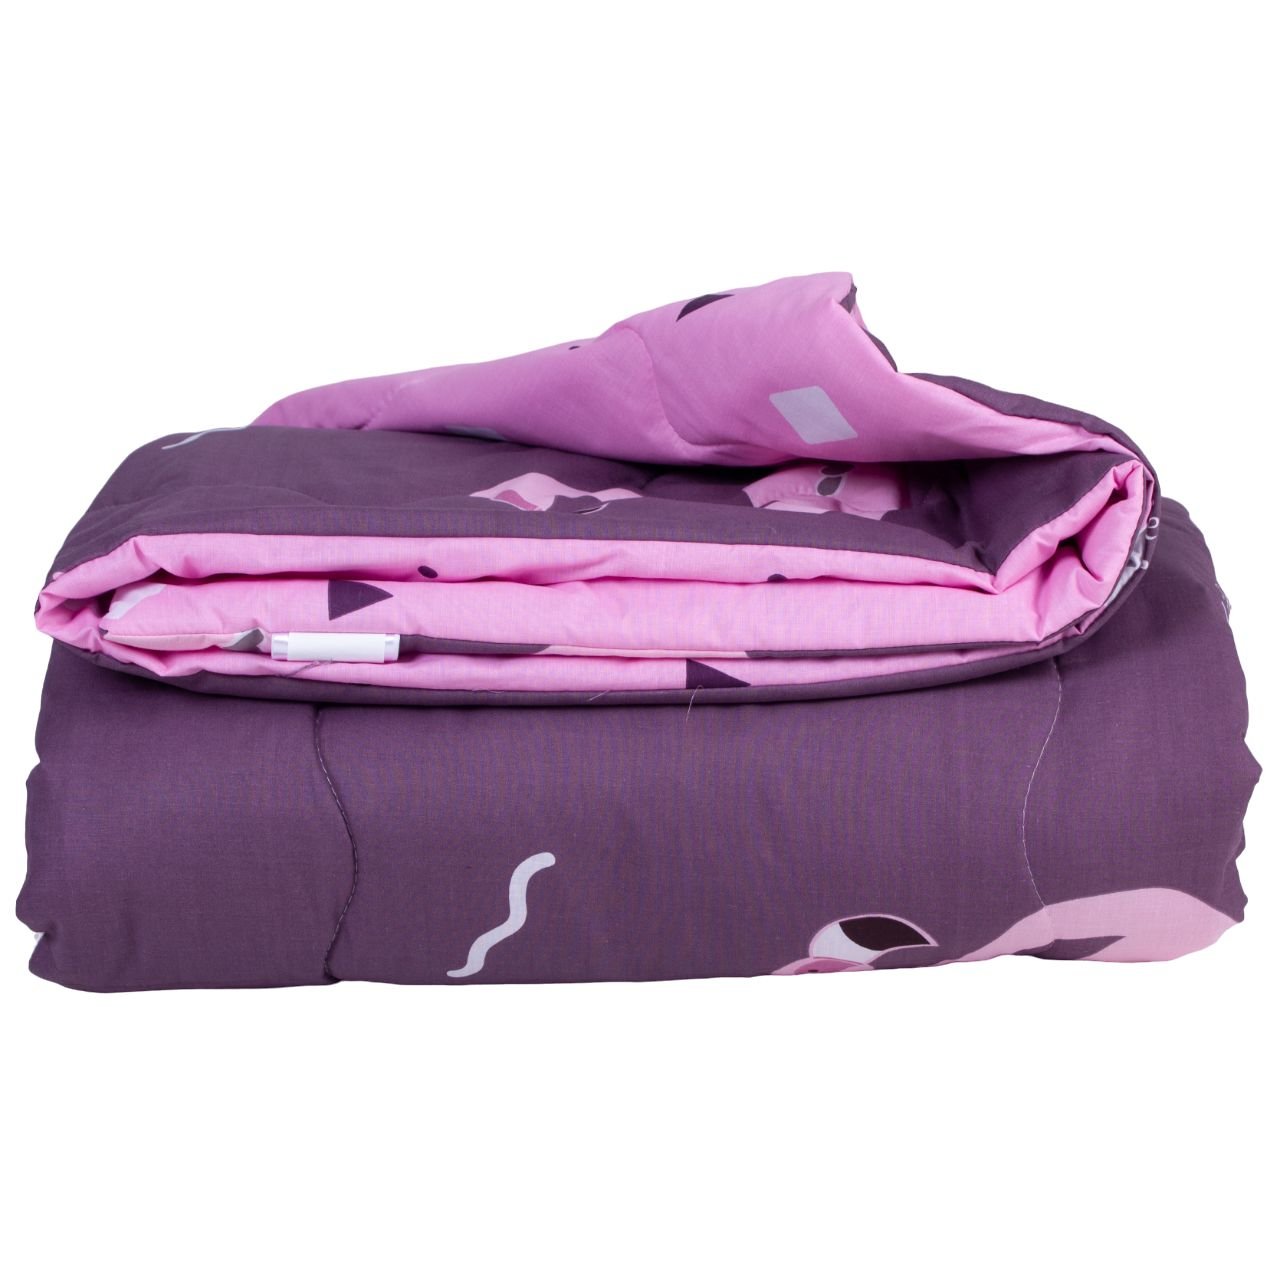 Одеяло антиалергенное MirSon Деми №2830 Сolor Fun Line Nice, евростандарт, 220х200 см, фиолетовое (2200006700821) - фото 2